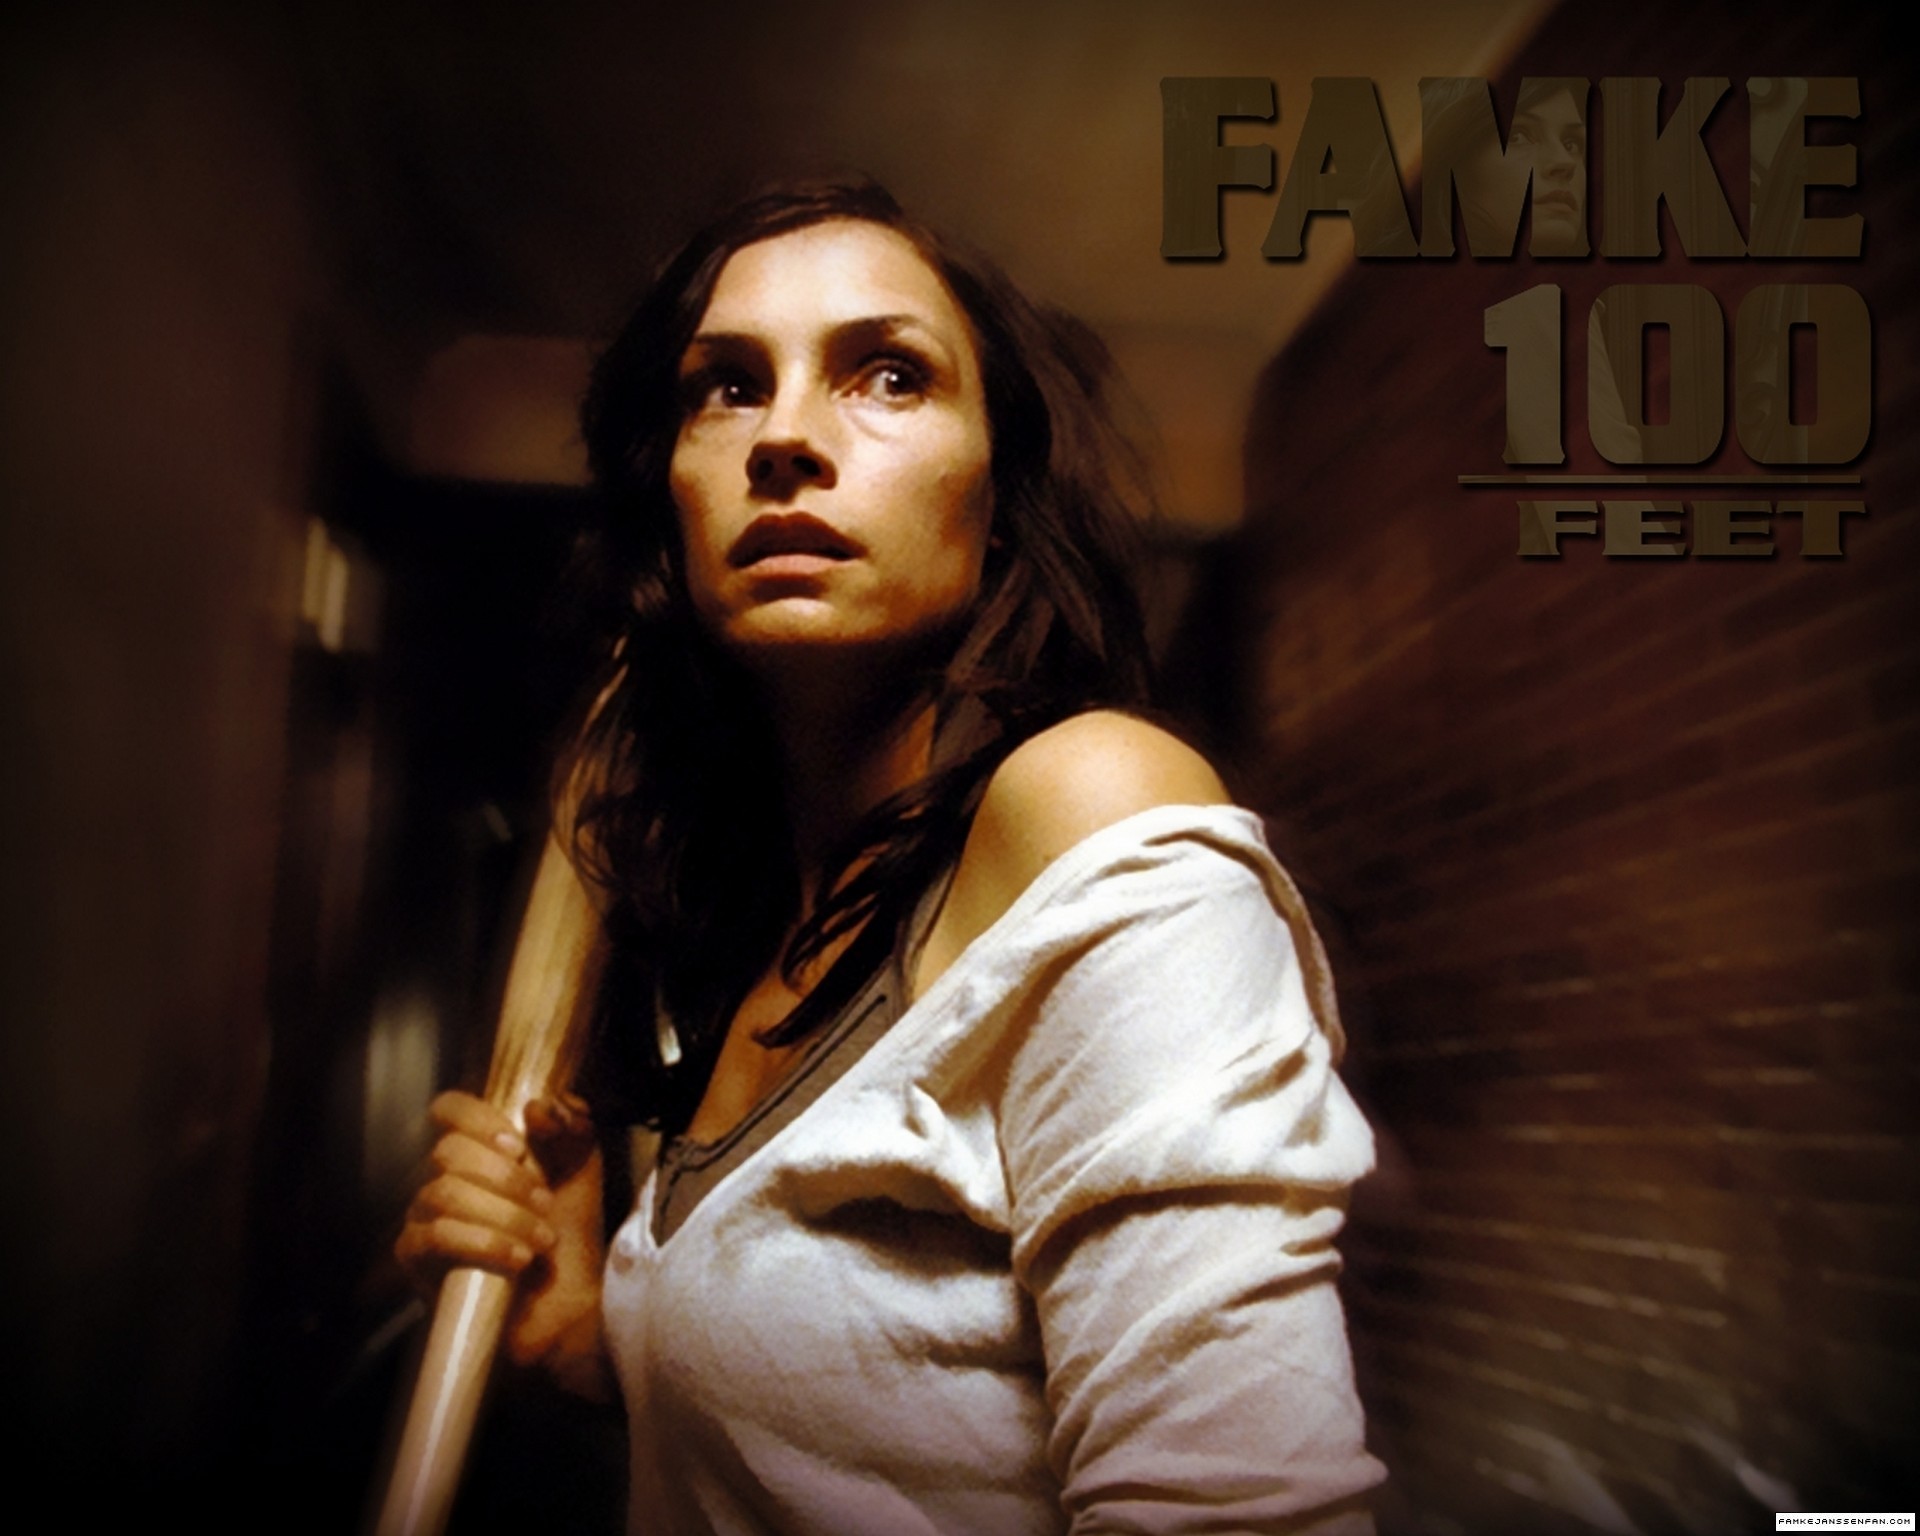 100 Feet stills - Famke Janssen Photo (18565630) - Fanpop1920 x 1536